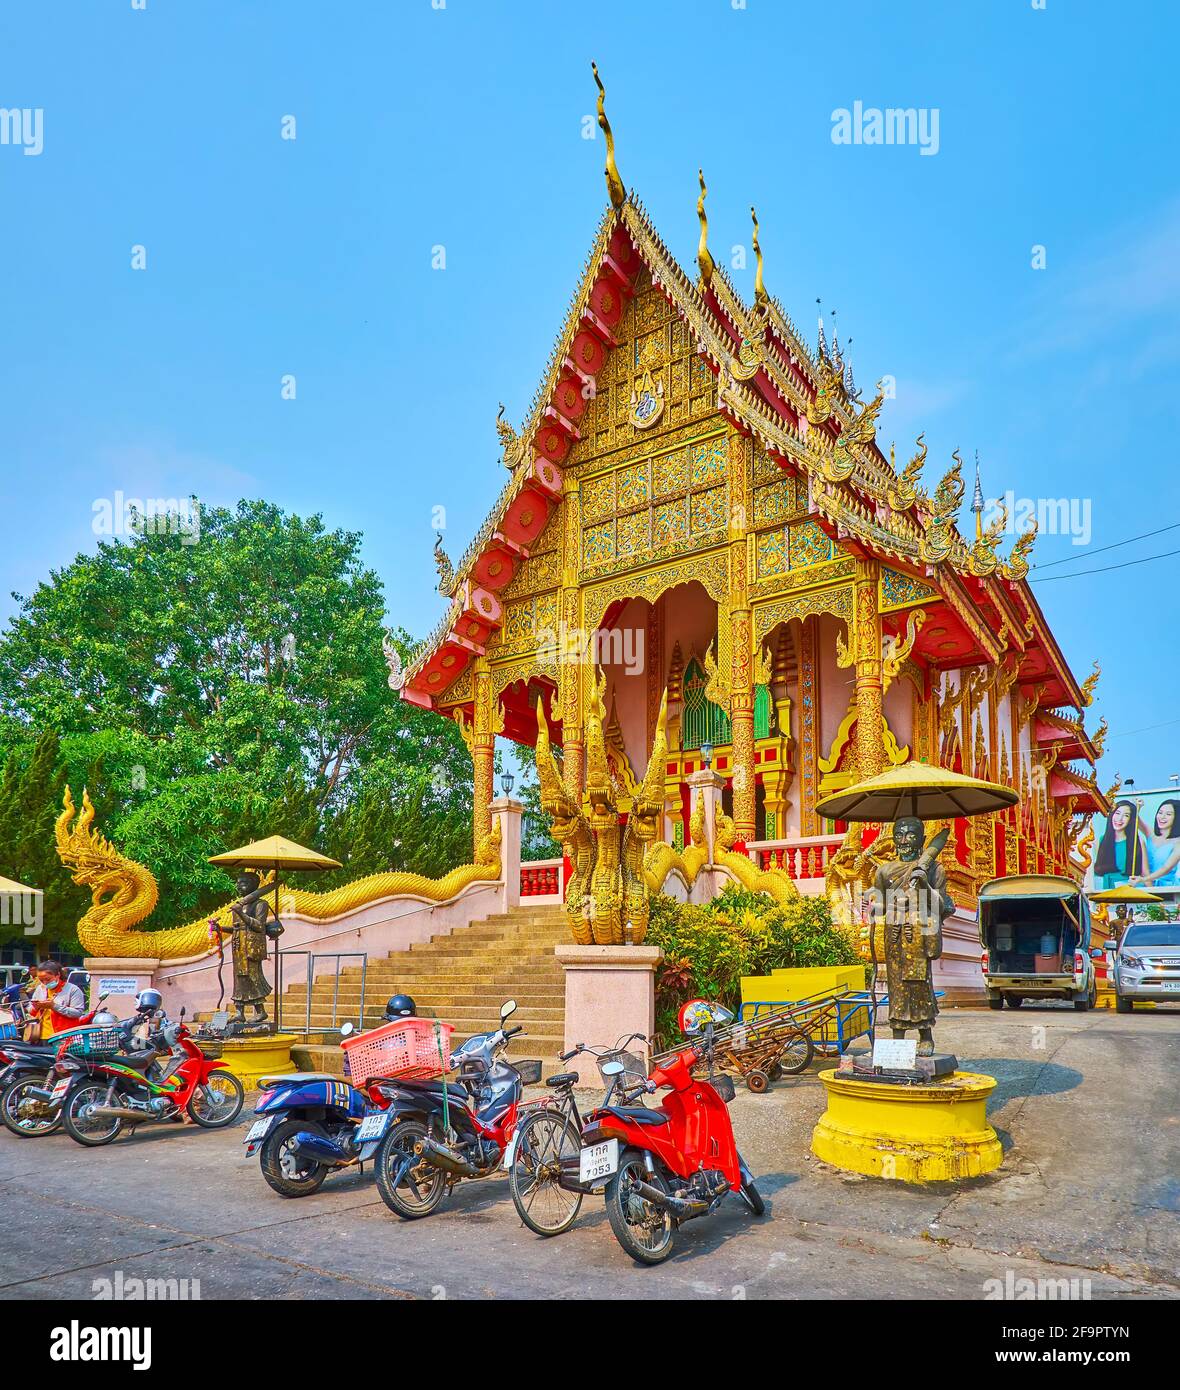 La façade pittoresque du temple médiéval Wat Mung Muang avec des sculptures de serpents géants de Naga, des motifs de dorures sculptés, des colonnes, un bargeboard complexe Banque D'Images